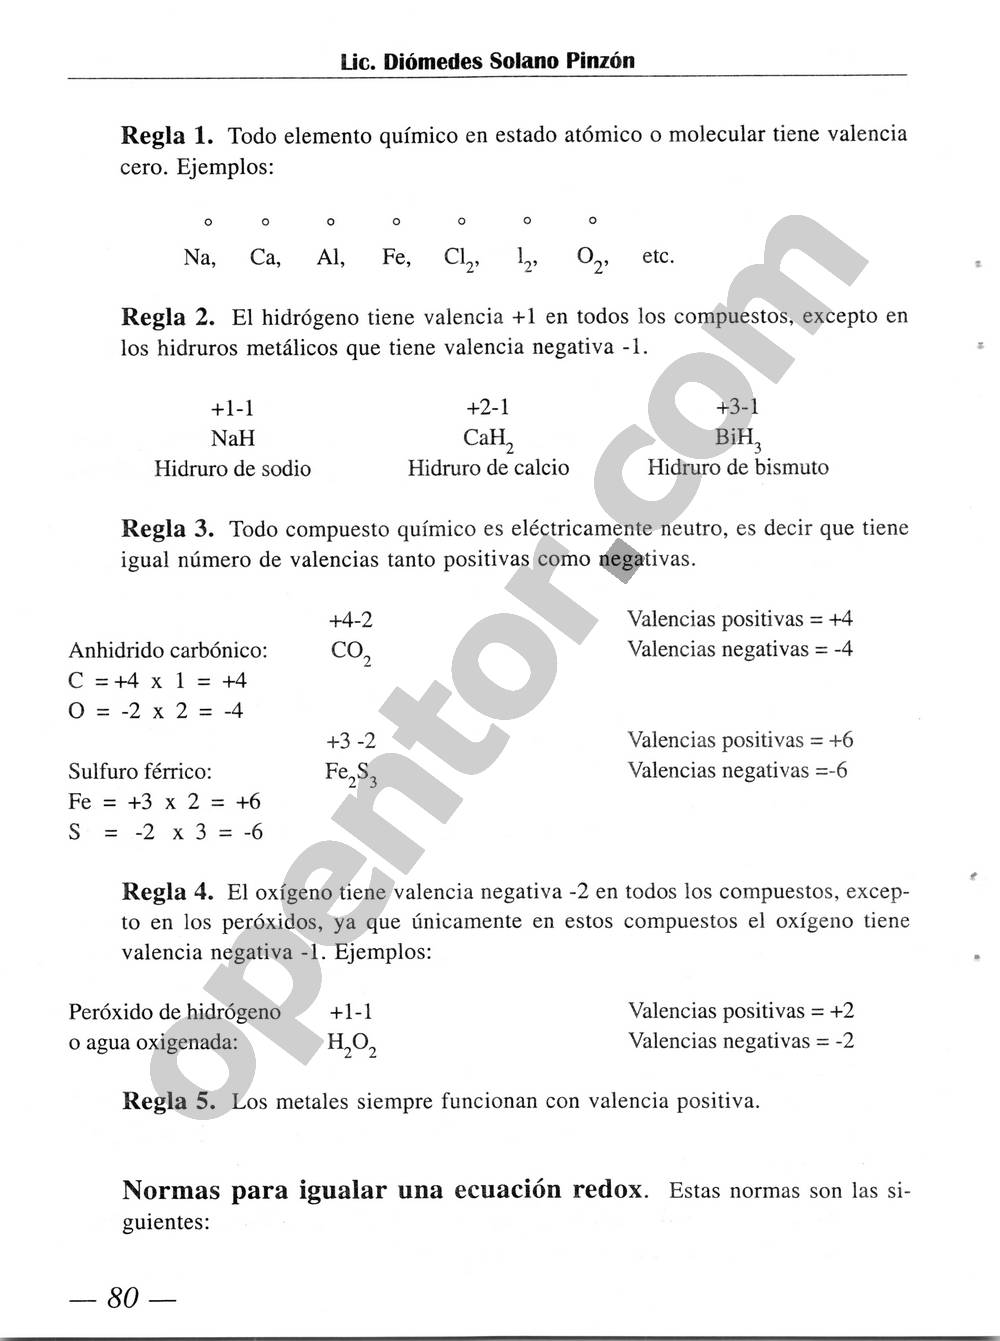 Química Simplificada de Diómedes Solano - Página 80